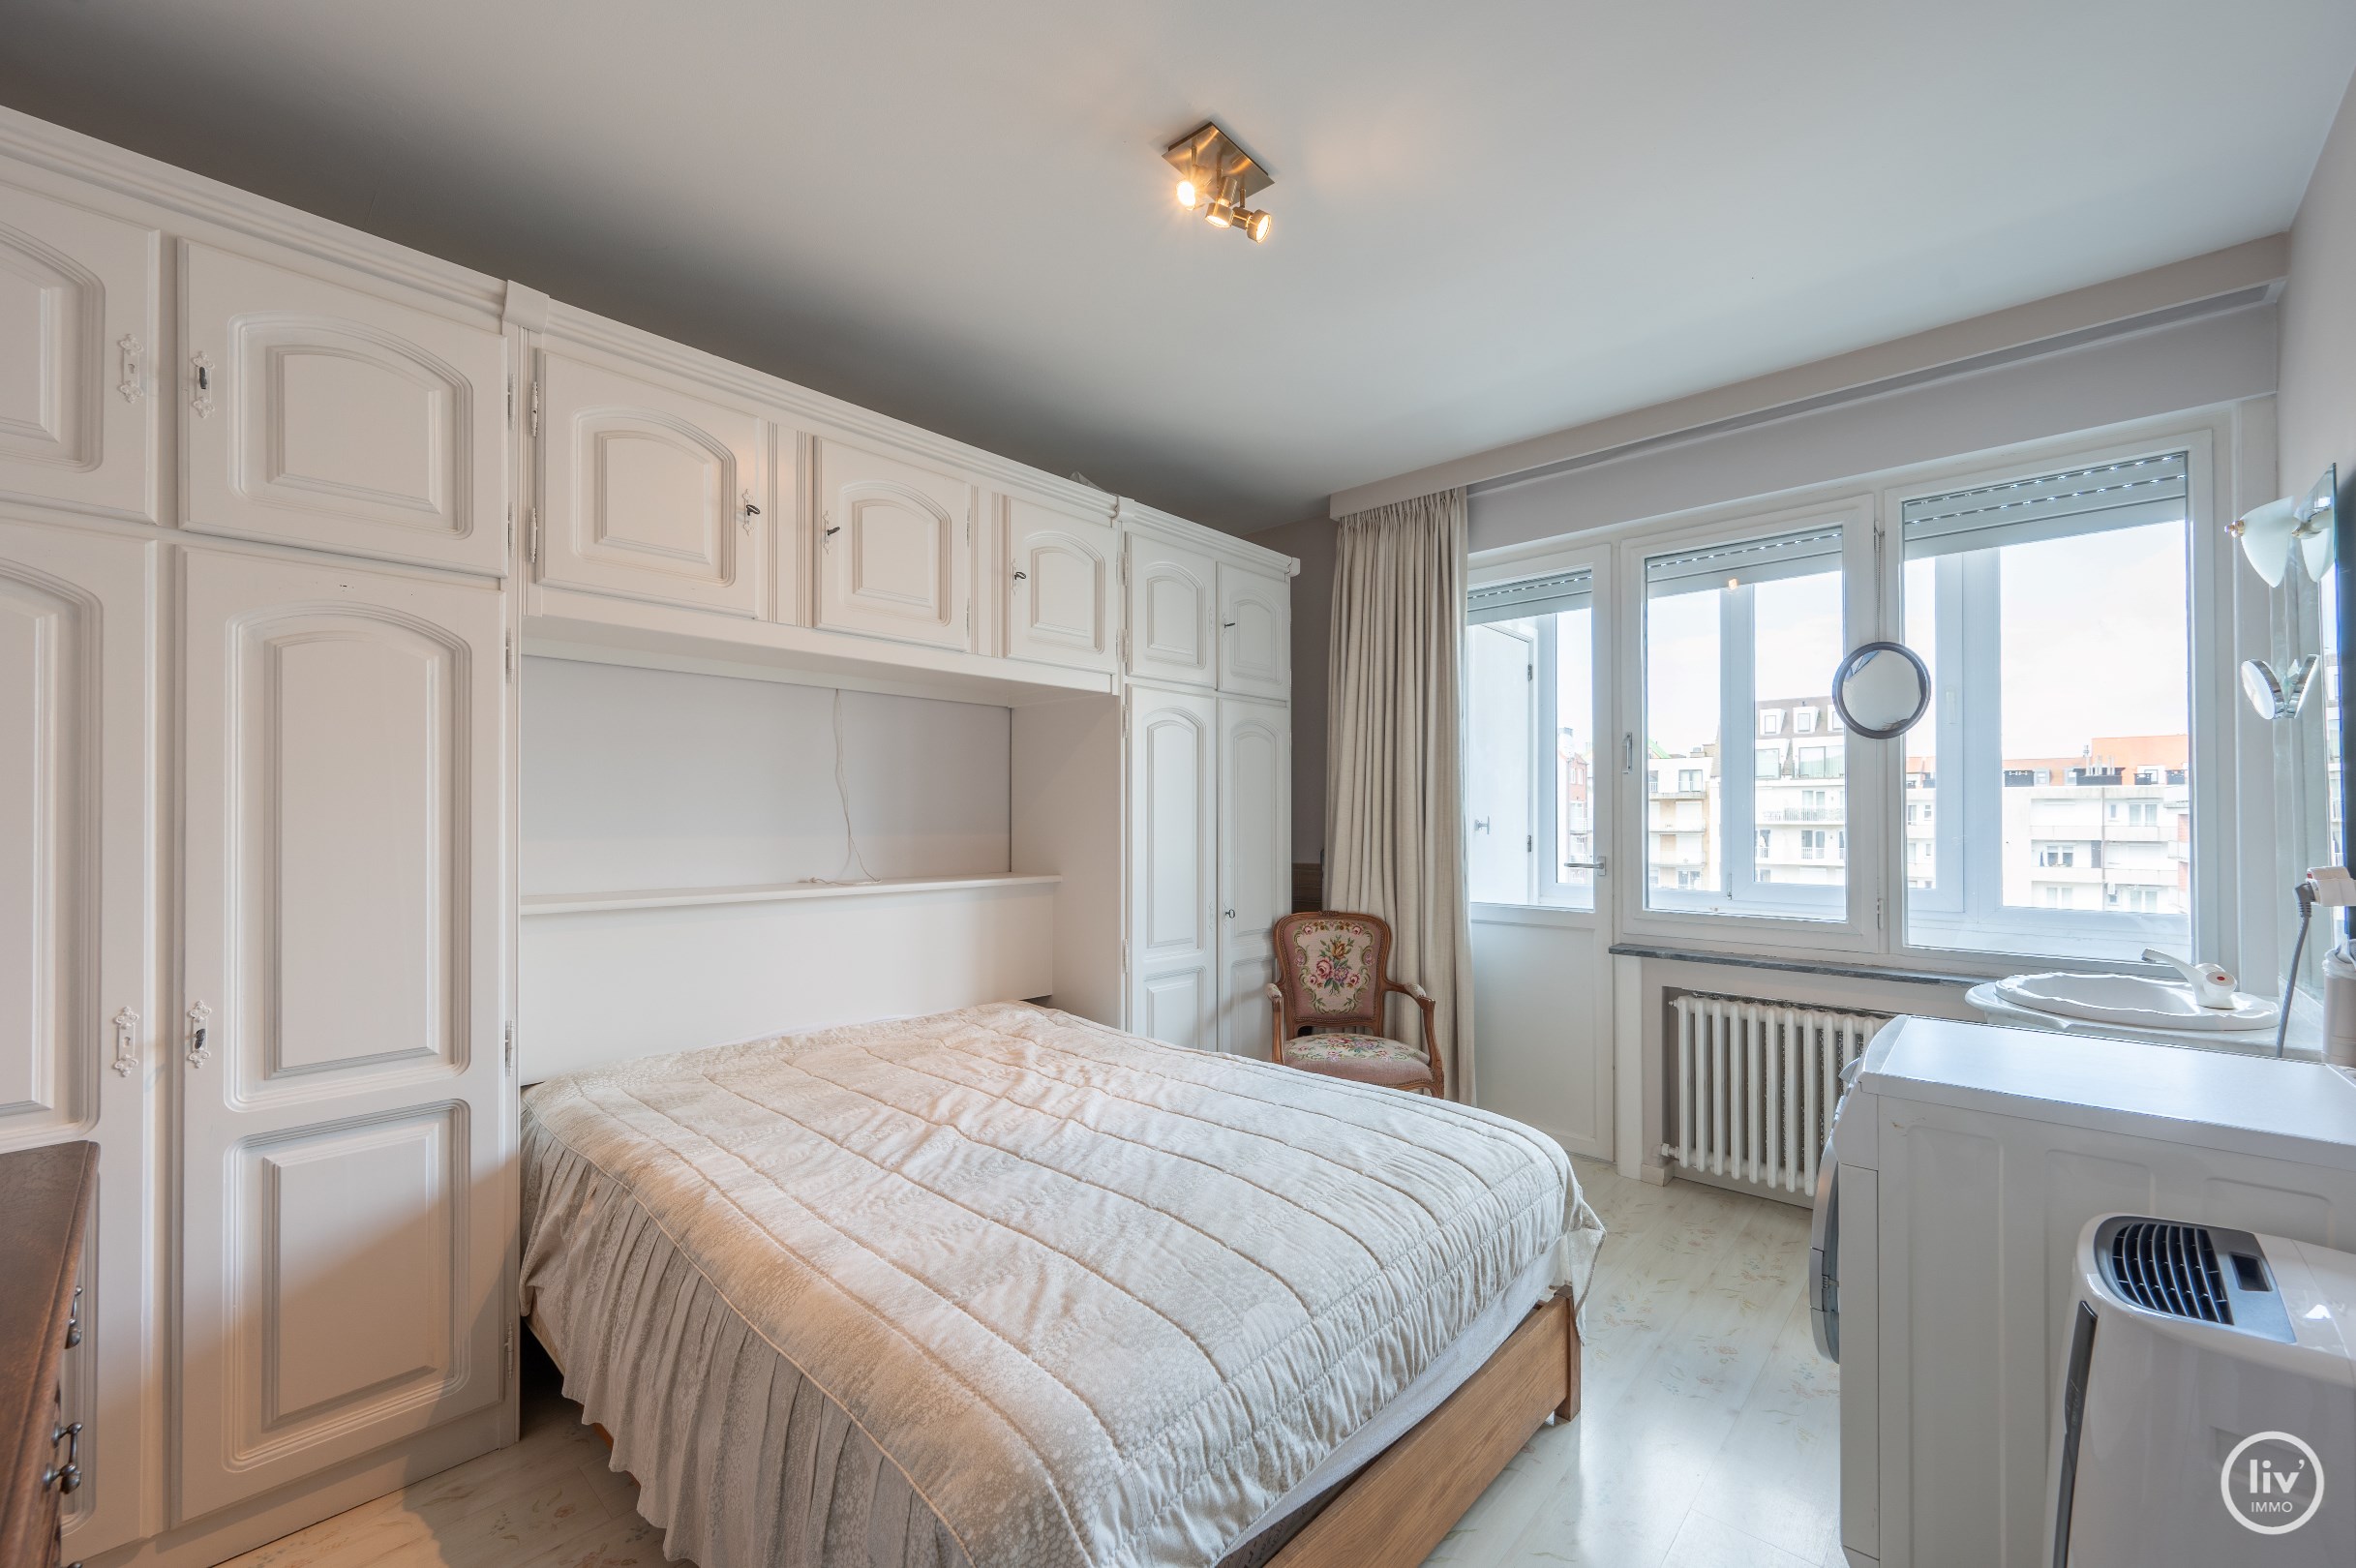 Bel appartement de 3 chambres avec une belle terrasse ensoleill&#233;e, id&#233;alement situ&#233; dans la rue Blancgarin, &#224; proximit&#233; de la digue &#224; Knokke. 